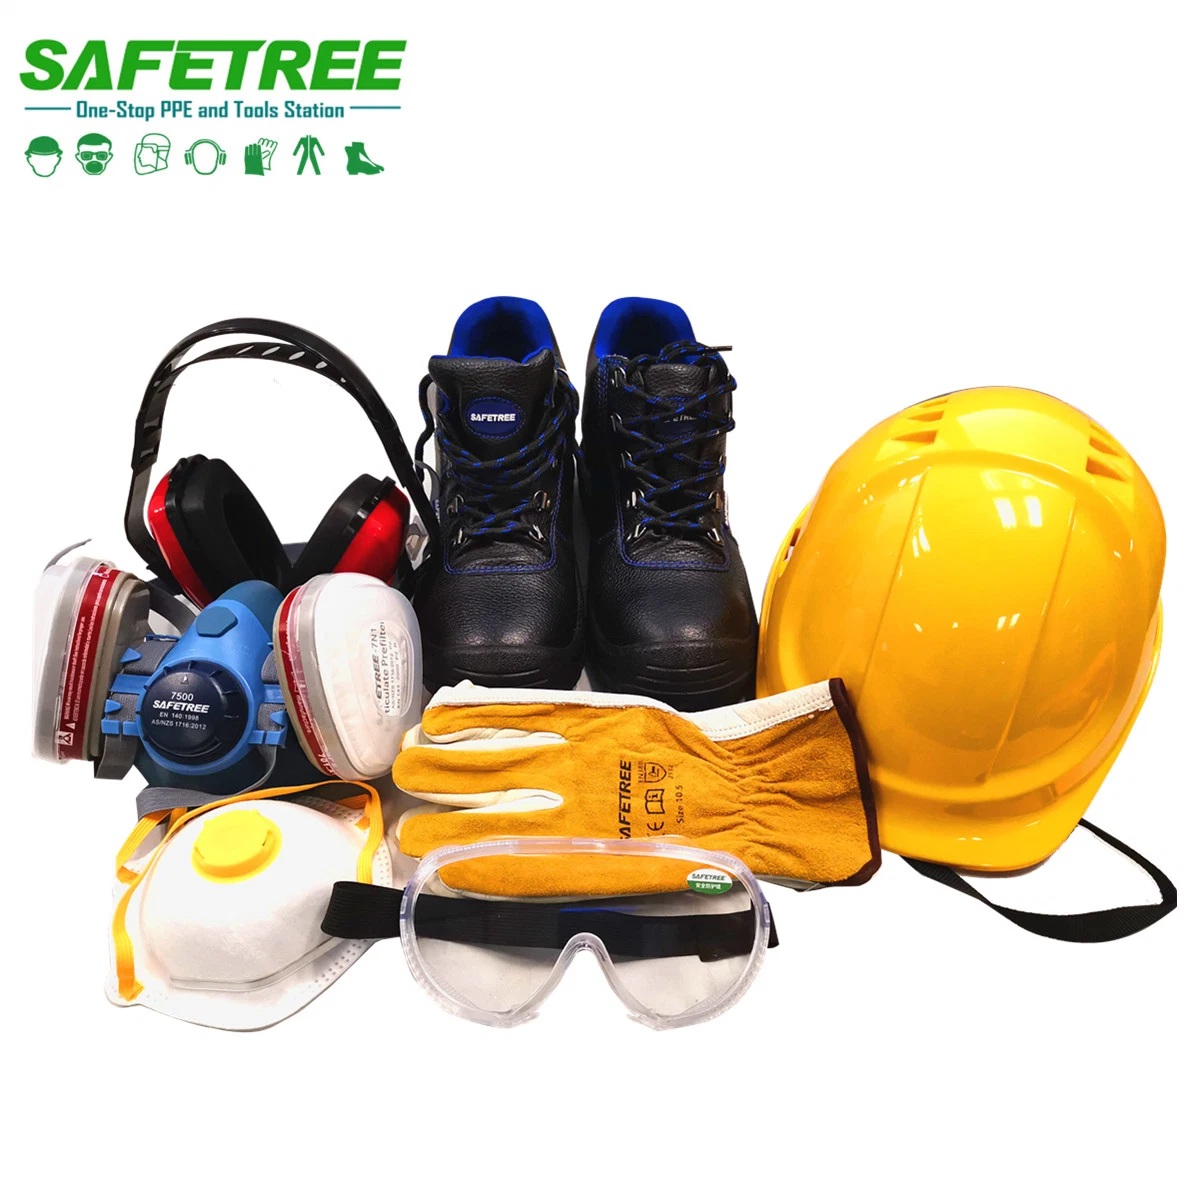 Equipo de protección personal Equipo de seguridad PPE para construcción, minería, electricidad